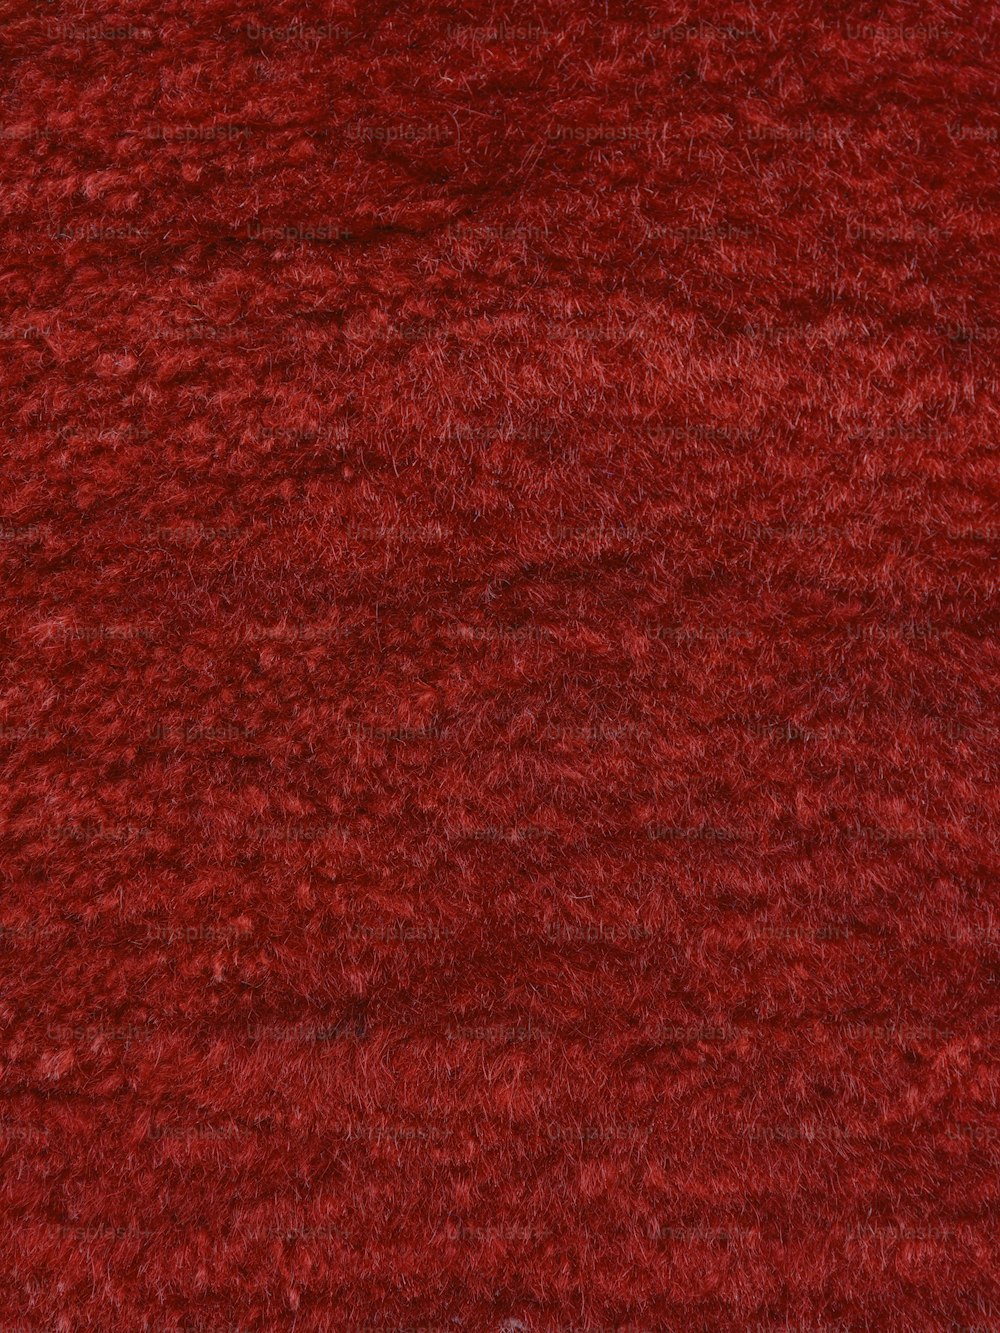 um close up de um tapete de área vermelha